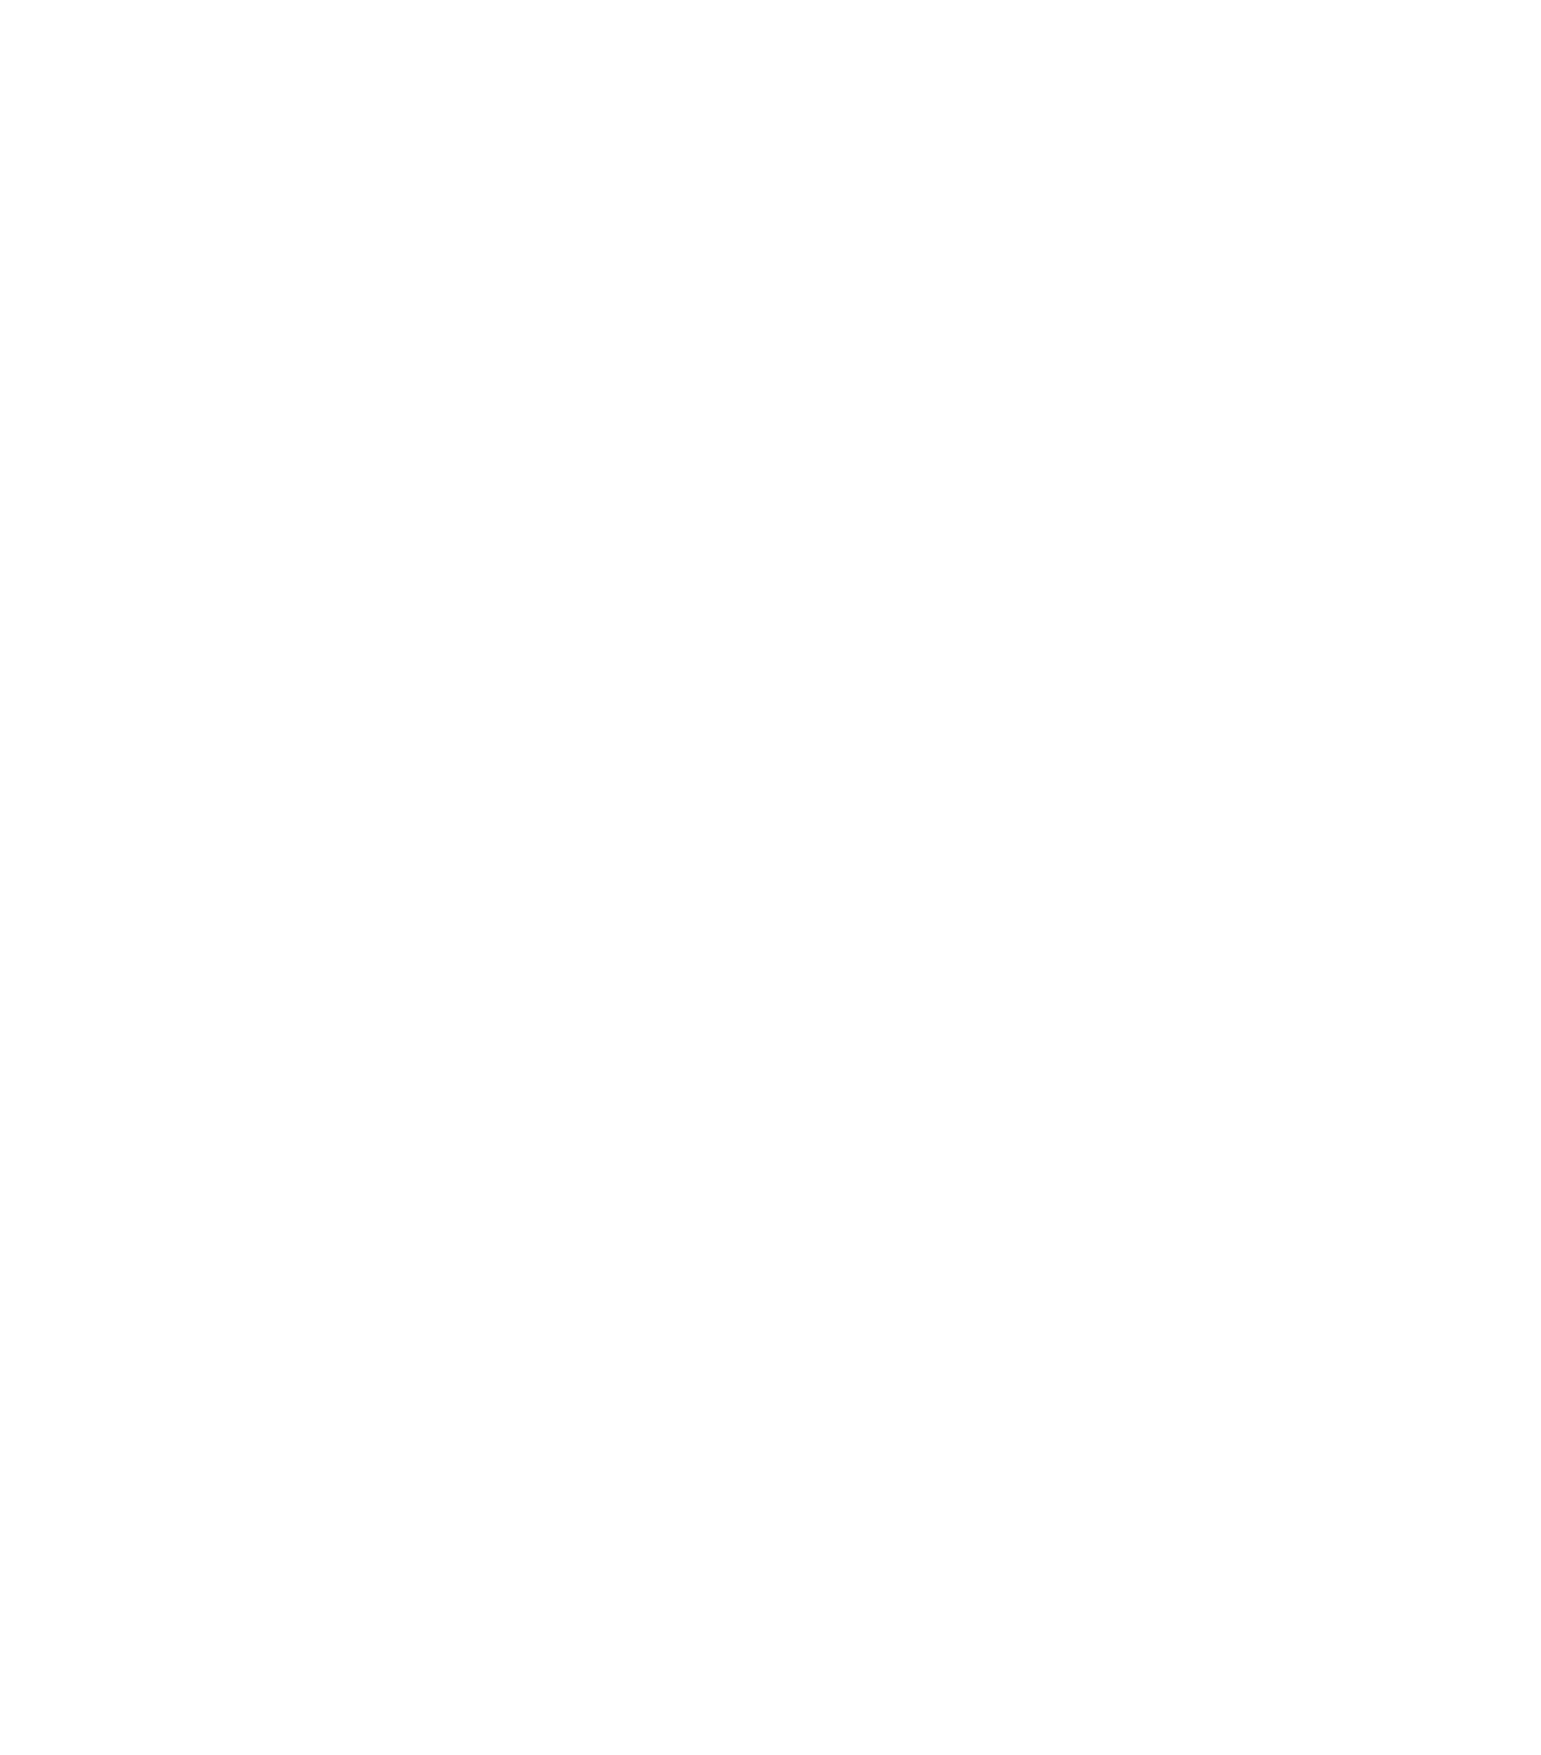 Central Retail Corporation logo pour fonds sombres (PNG transparent)